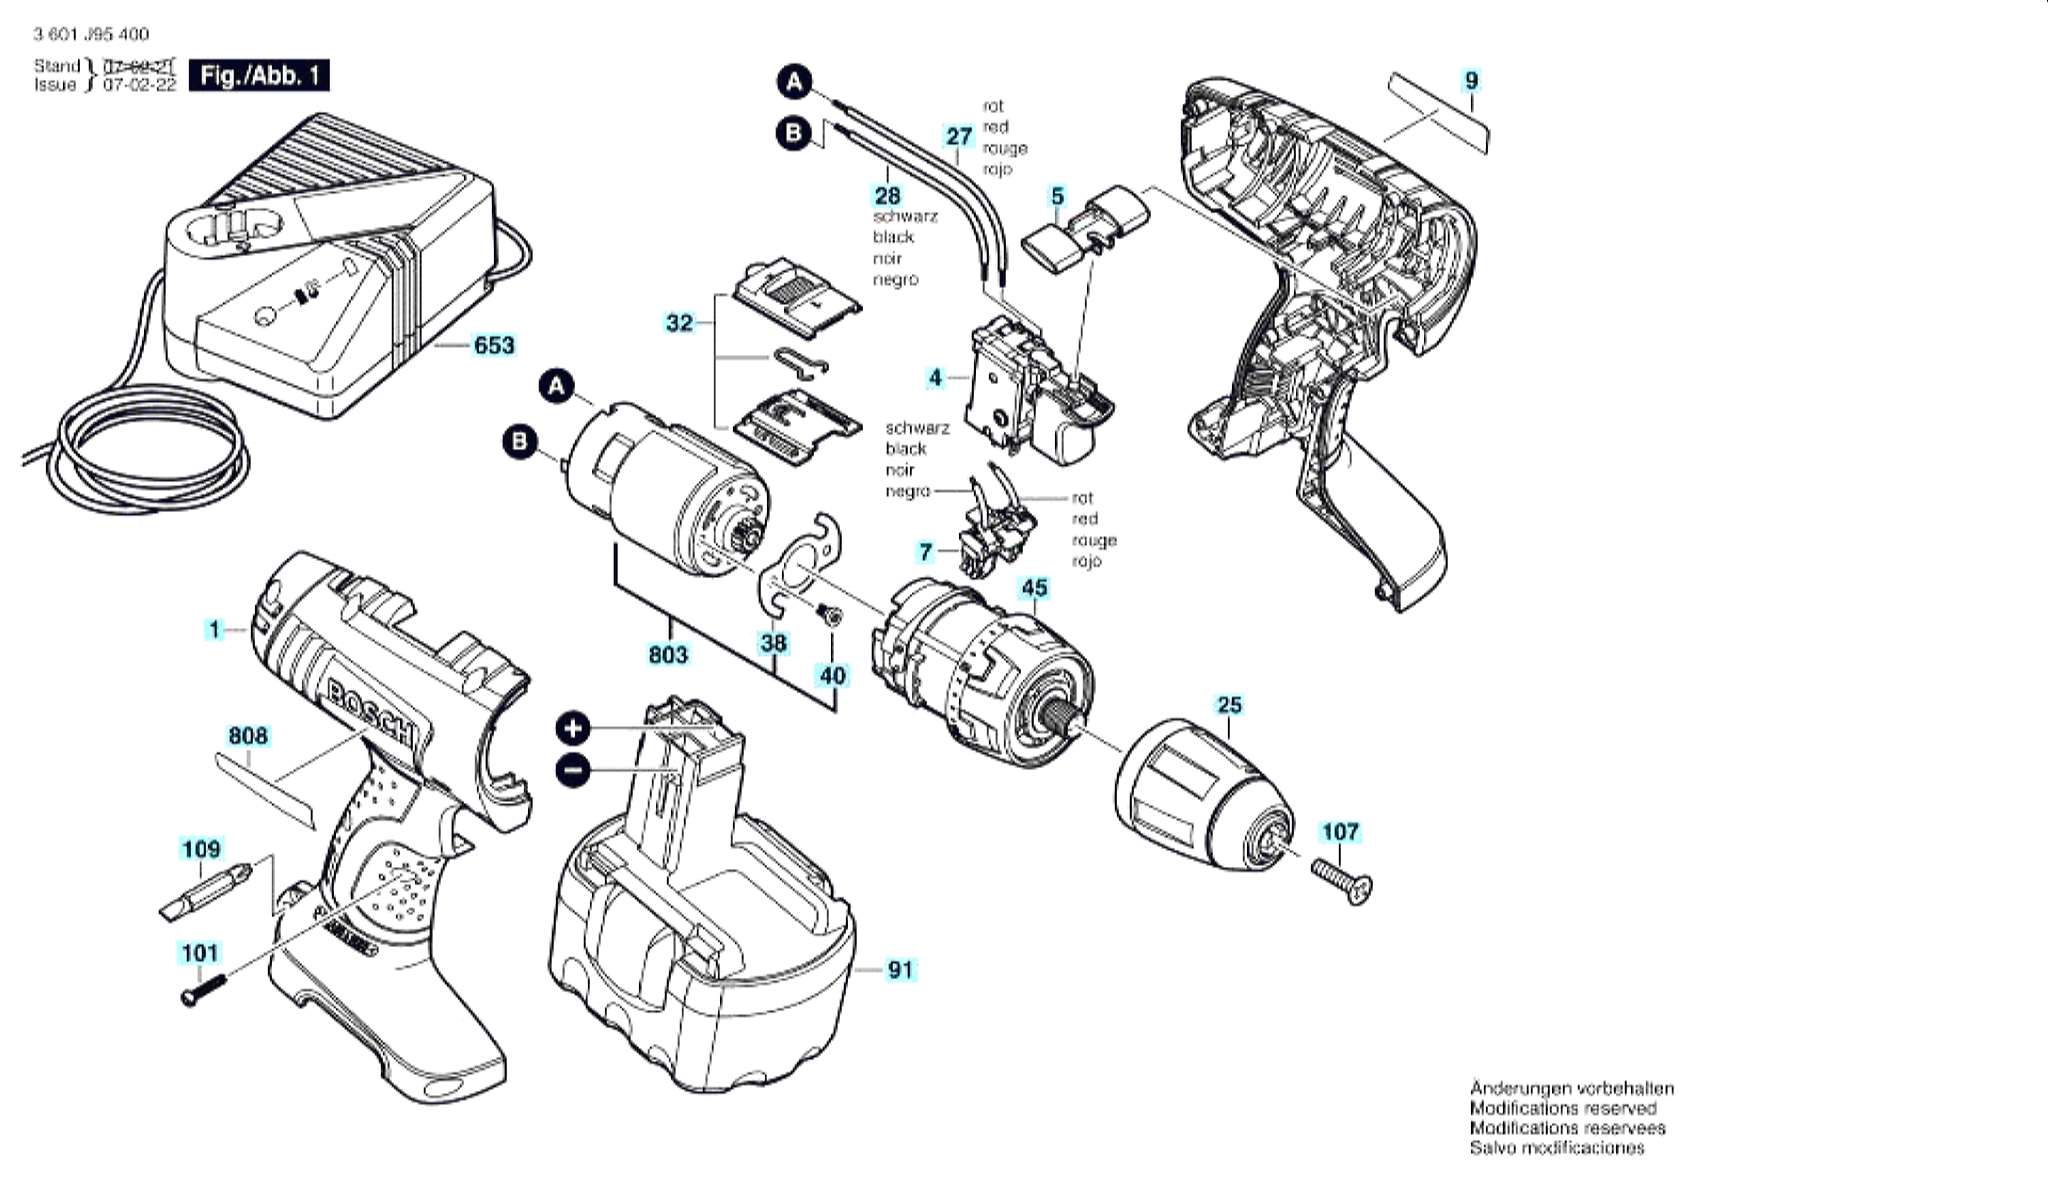 Запчасти, схема и деталировка Bosch GSR 14,4 V (ТИП 3601J95400)